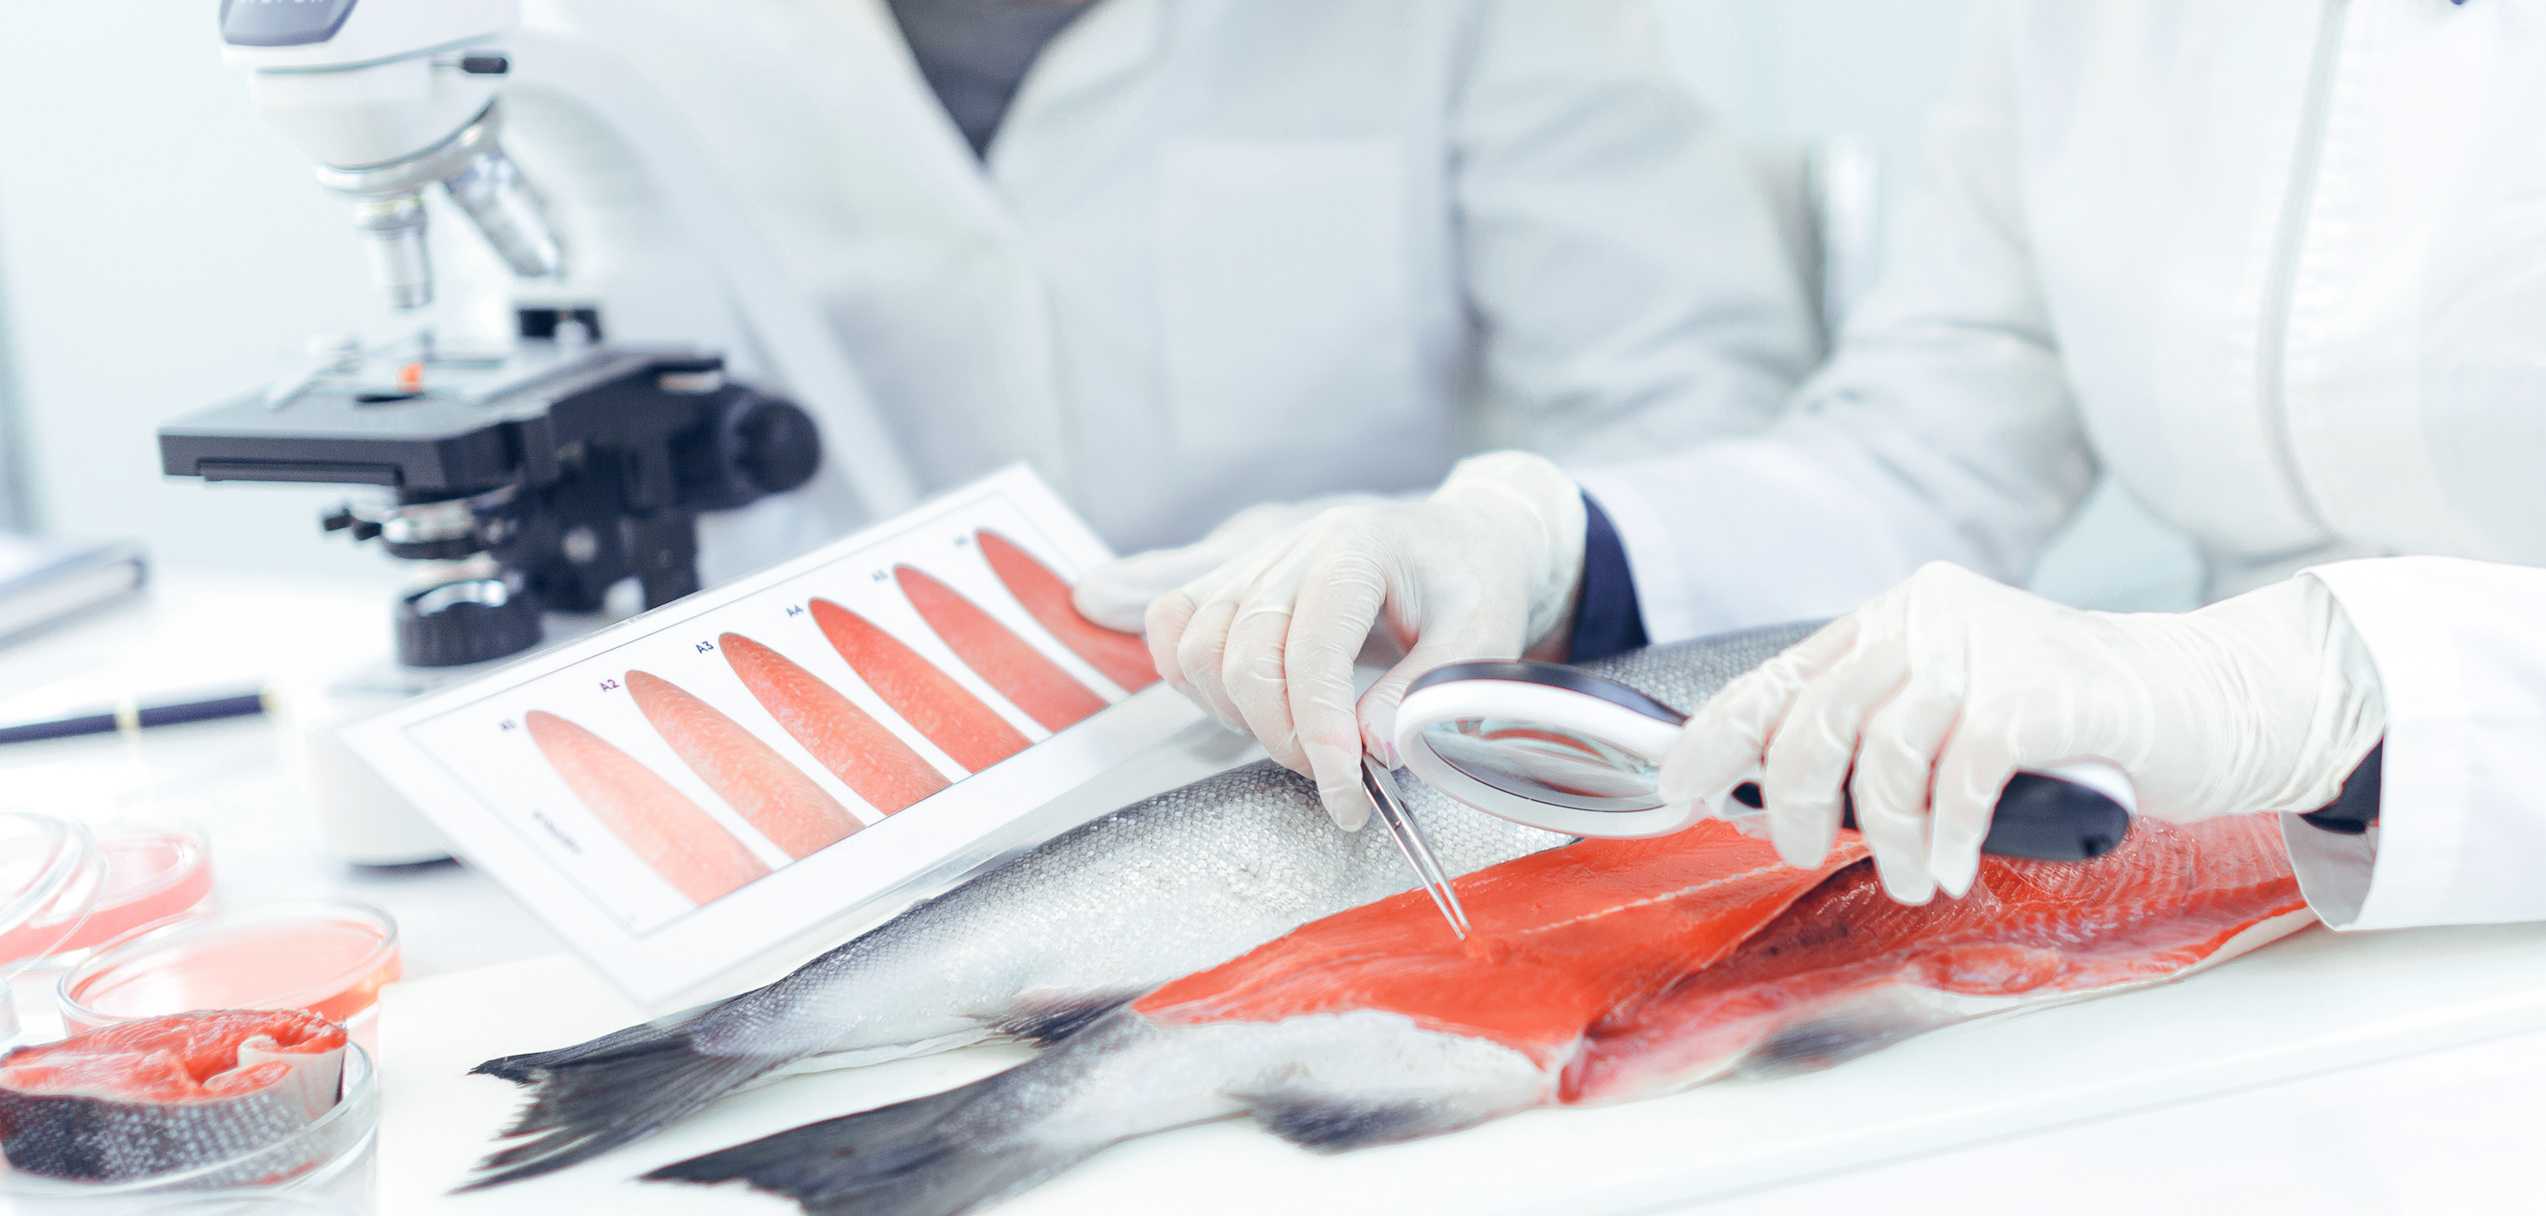 Оценка качества рыбы. Ветеринарно-санитарная экспертиза рыбы. Вет Сан экспертиза рыбы. Лабораторные исследования рыбы.